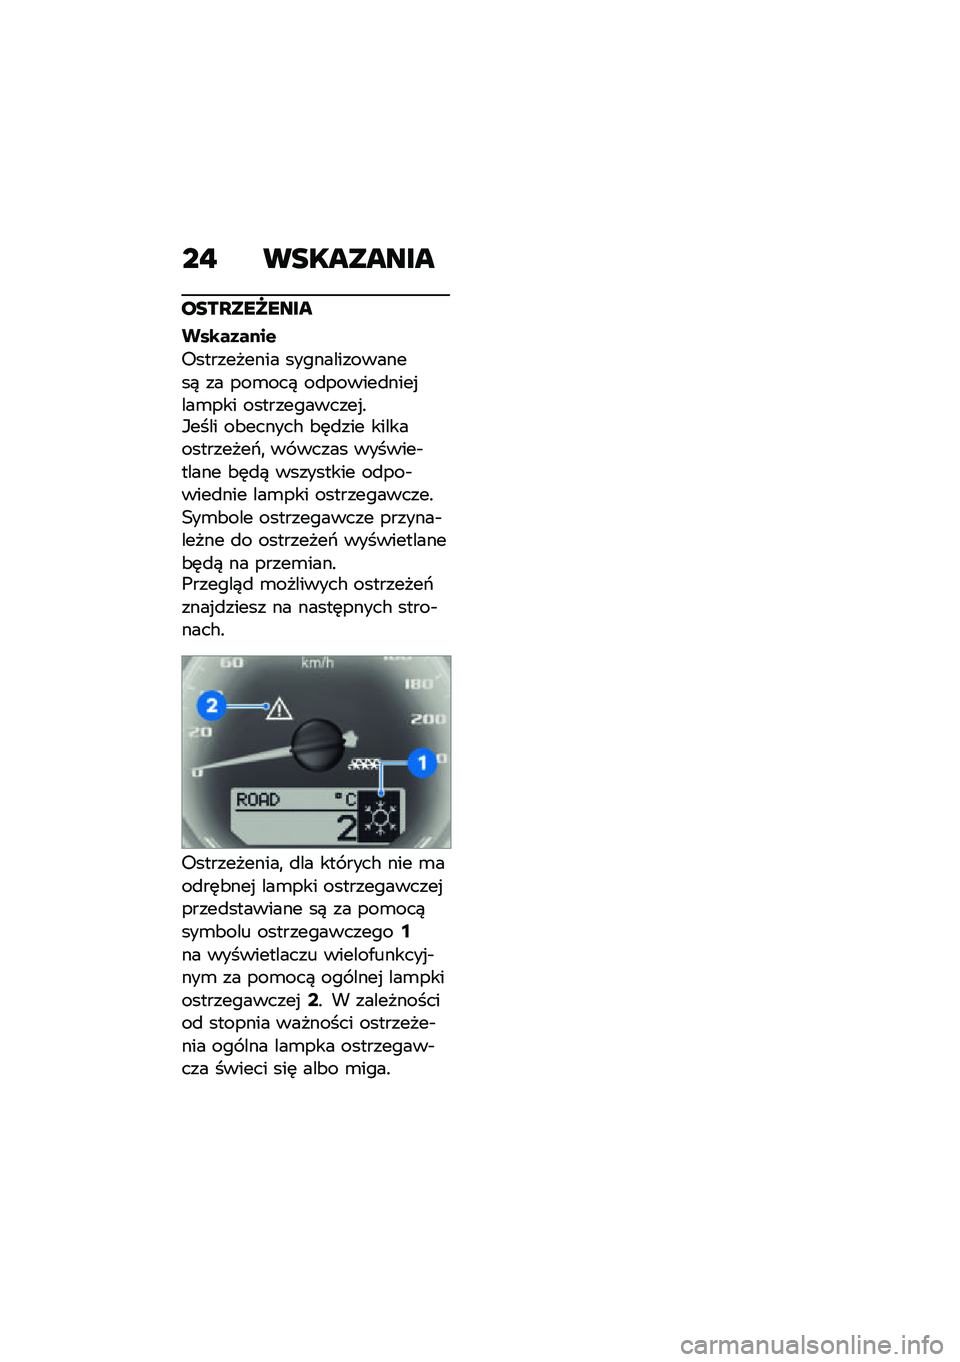 BMW MOTORRAD R NINE T URVAN G/S 2021  Instrukcja obsługi (in Polish) ��" ���������
����P���T����
���\b��1����$
�6���������� ���������������) �� ���\b���) ��
������
����%���\b��� �����������